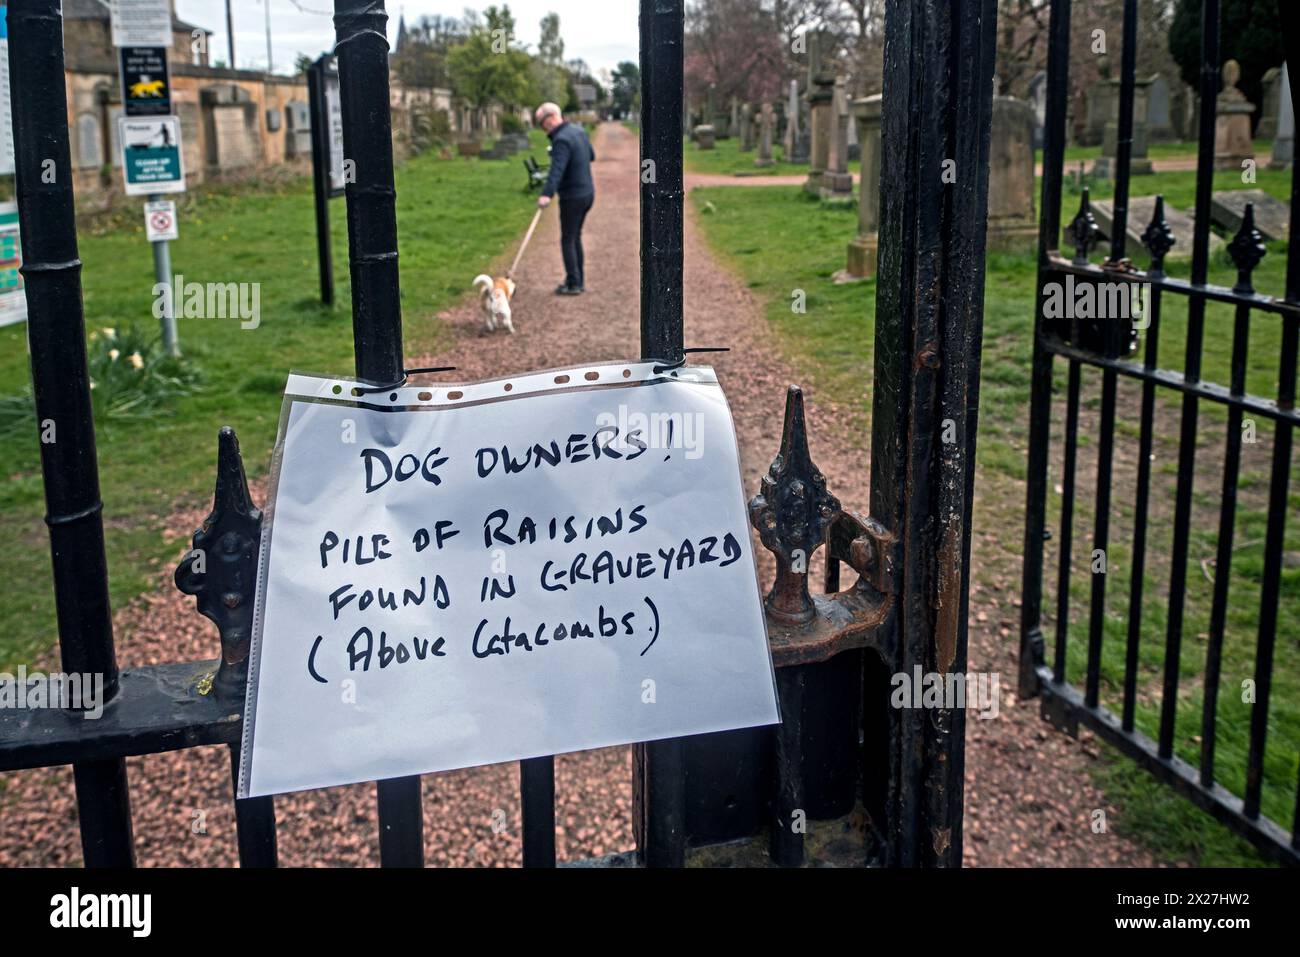 Hinweis am Tor zum Grange Friedhof, der Hundebesitzer warnt, dass Rosinen auf dem Friedhof gefunden wurden (Rosinen sind potenziell giftig für Hunde). Stockfoto